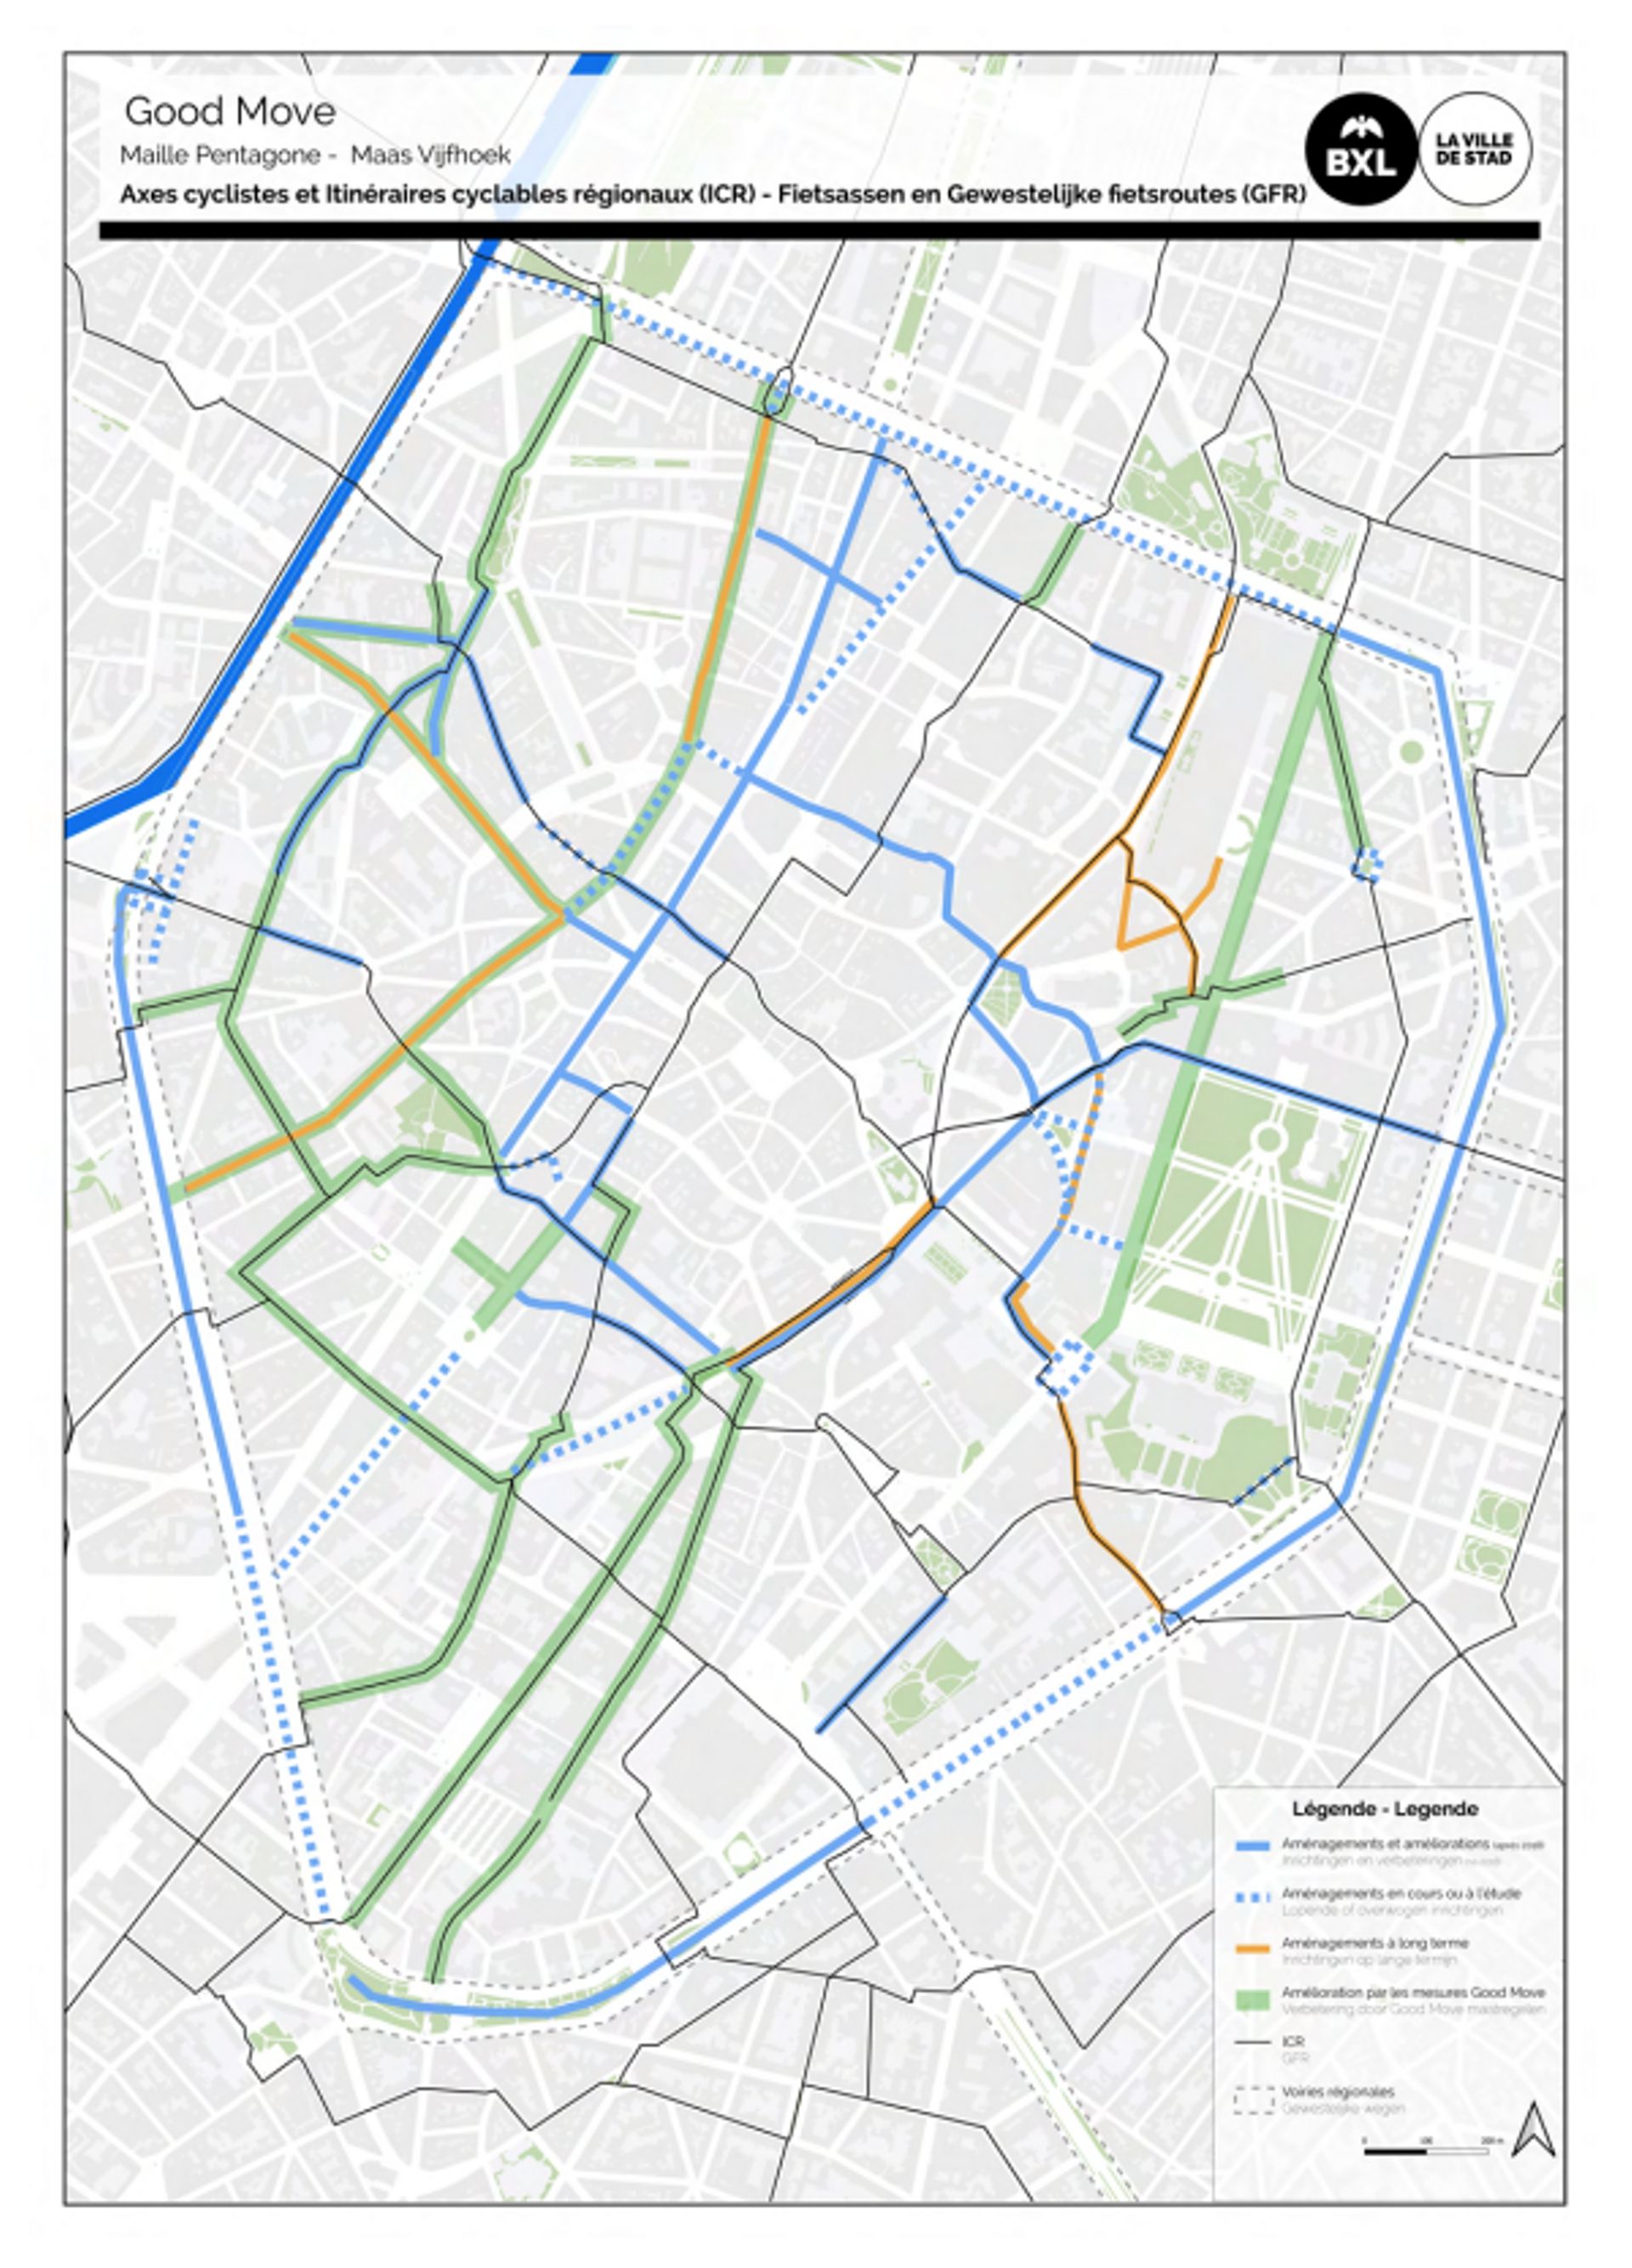 Good move : le Plan Régional de Mobilité de Bruxelles